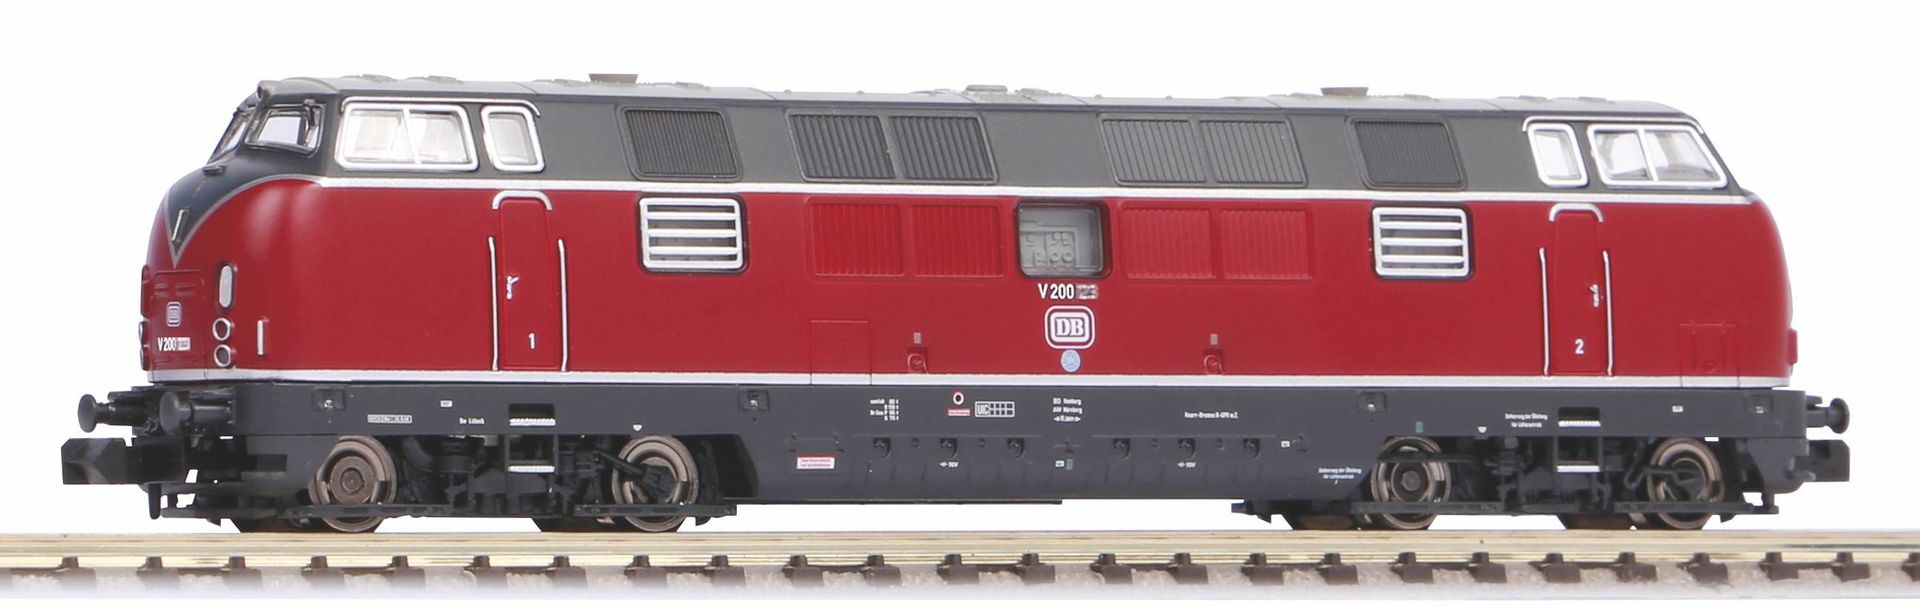 Piko 40502 - Diesellok BR V200.1 DB Ep.III N 1:160